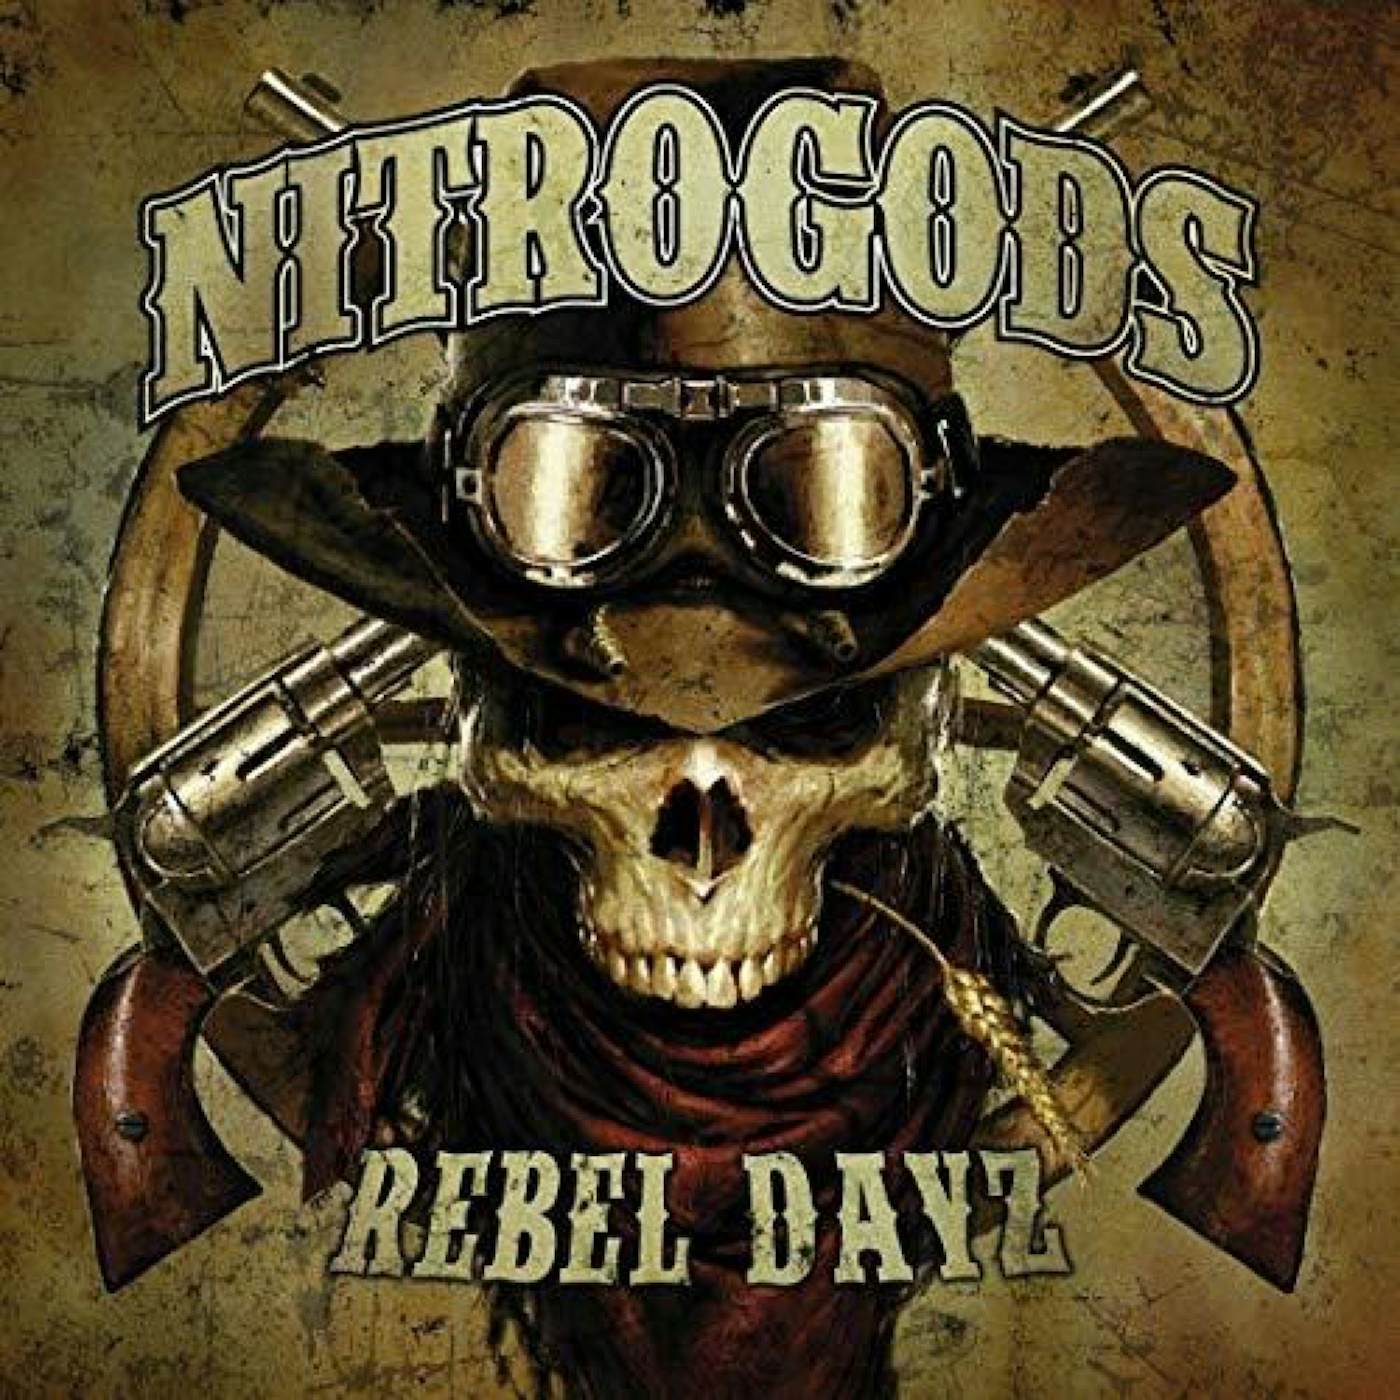 Nitrogods Rebel dayz lp Vinyl Record